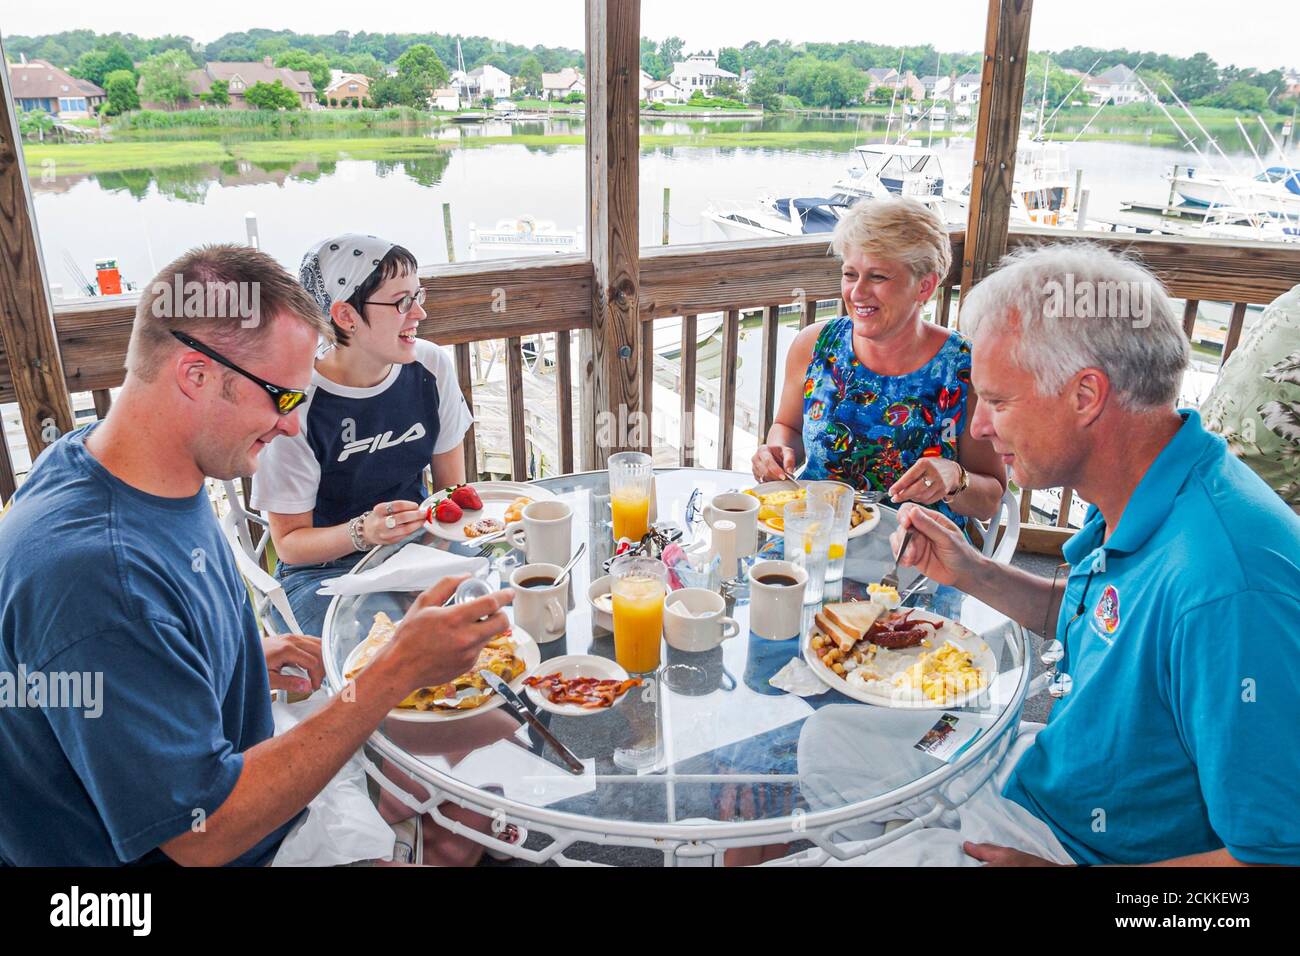 Hampton Virginia, Tidewater Area, Hampton River marina barche in barca, yacht del porto ristorante ristoranti mangiare fuori famiglia coppie tavola cibo al fresco Foto Stock